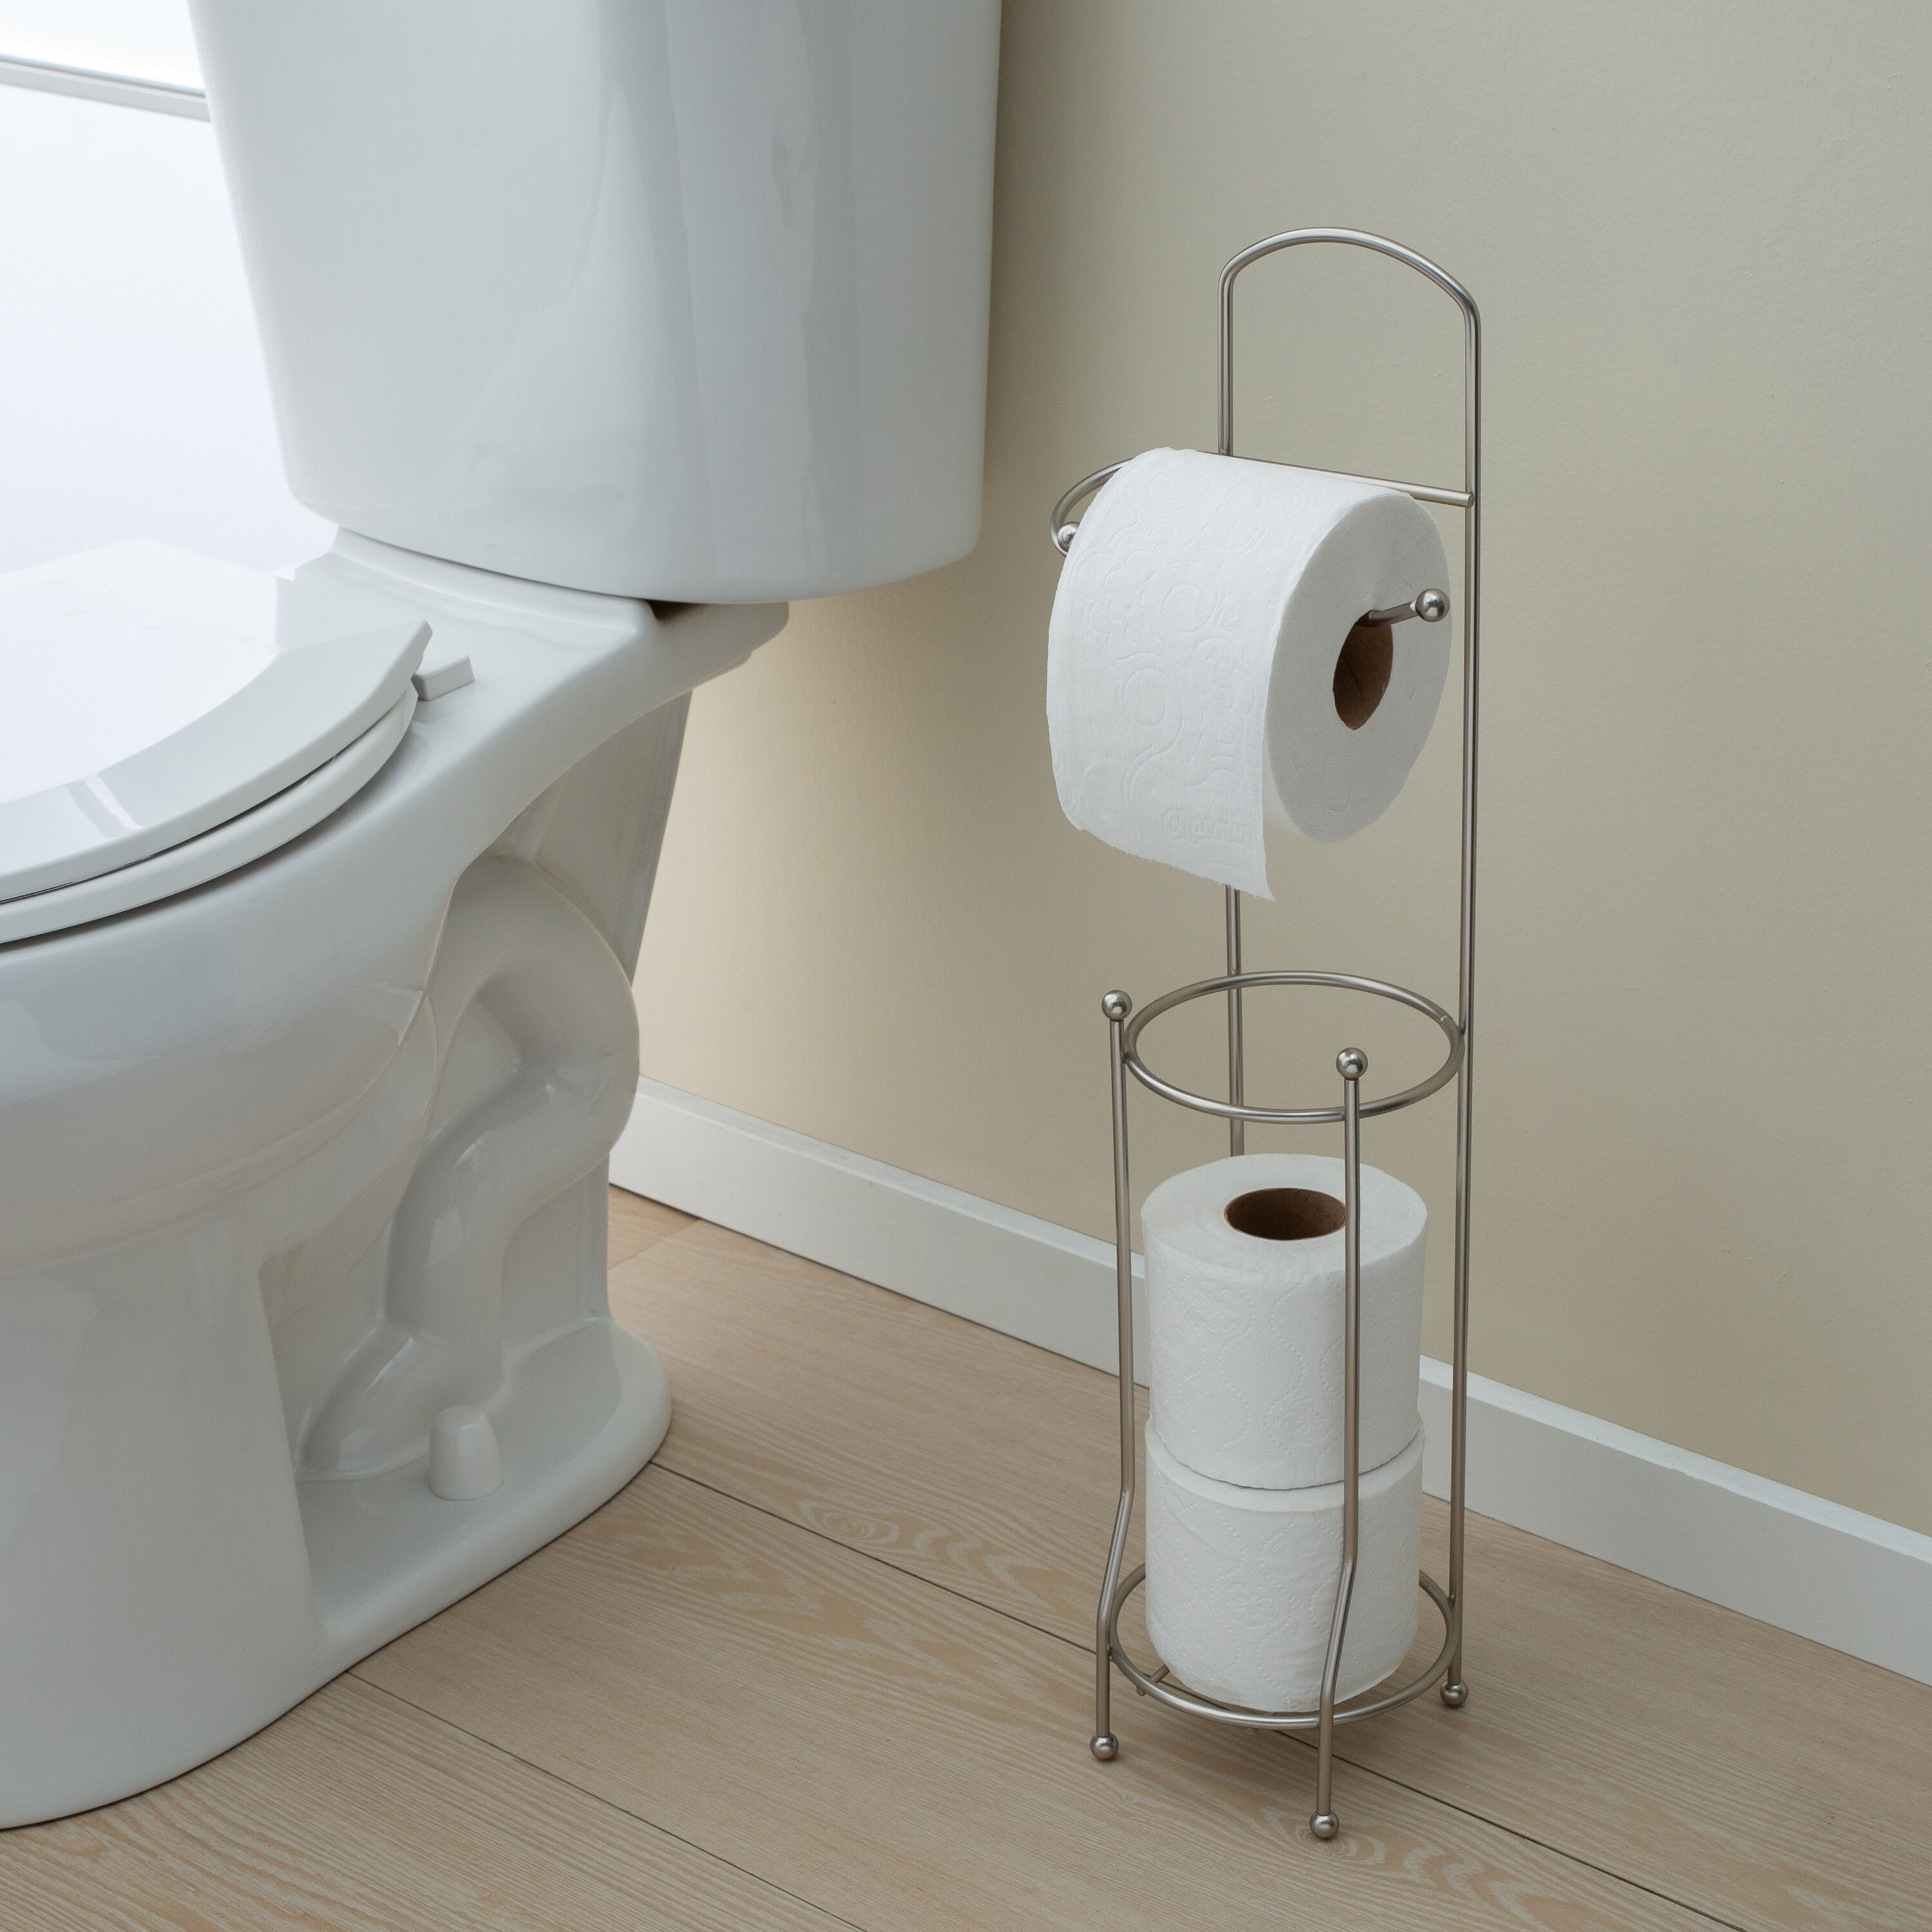 Toilet Paper Holder Stand, Free Standing Toilet Paper Holder for Jumbo  Mega, Stainless Steel Chrome Finish Toilet Paper Roll Holder, Housen  Solutions